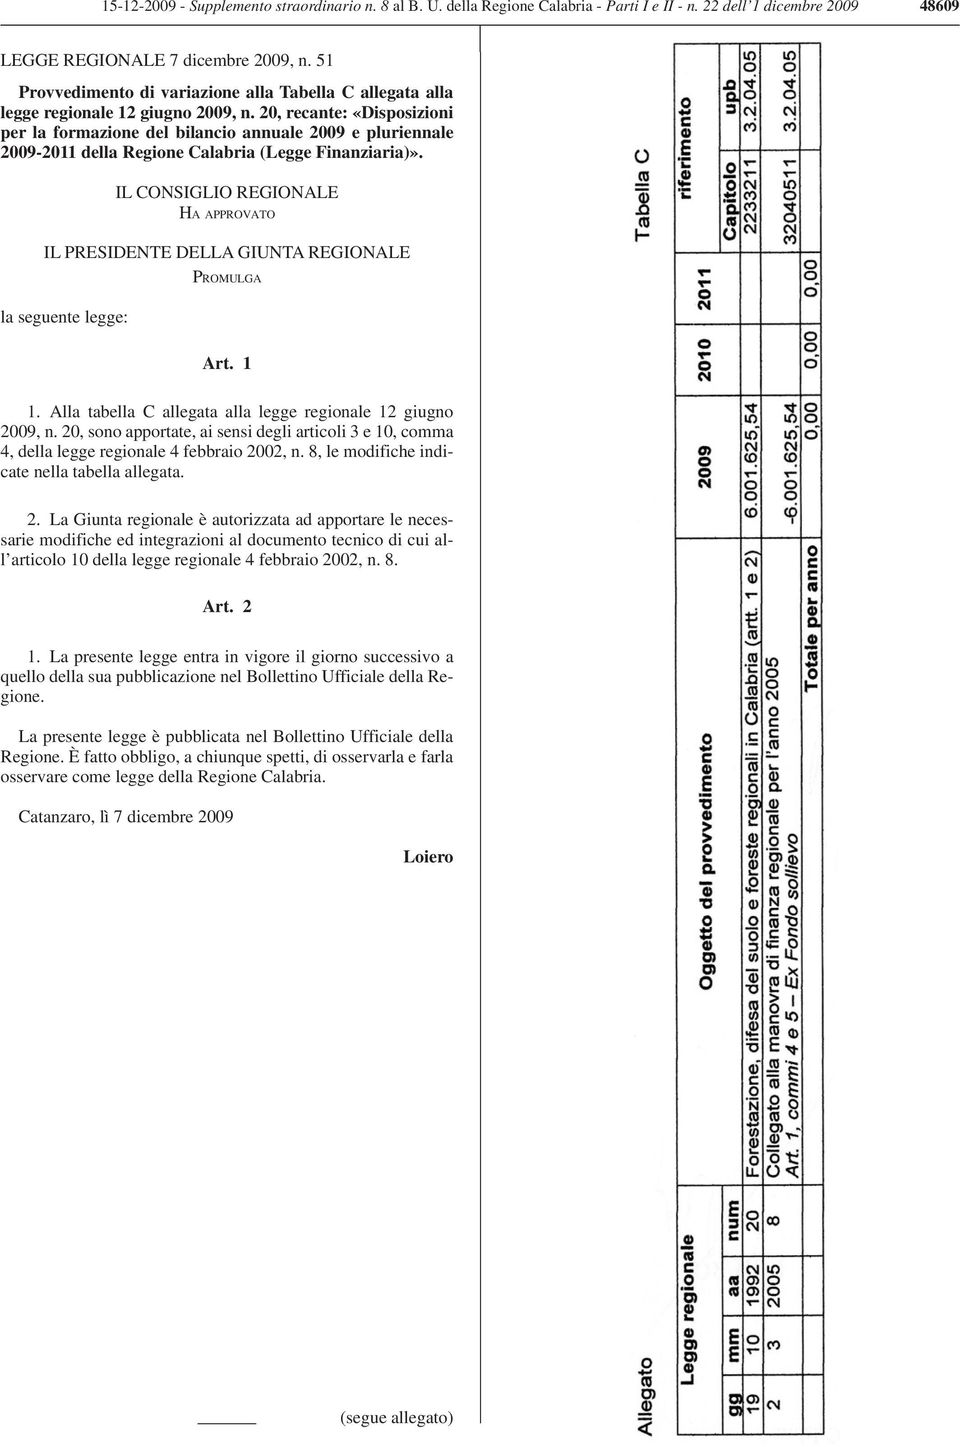 20, recante: «Disposizioni per la formazione del bilancio annuale 2009 e pluriennale 2009-2011 della Regione Calabria (Legge Finanziaria)».